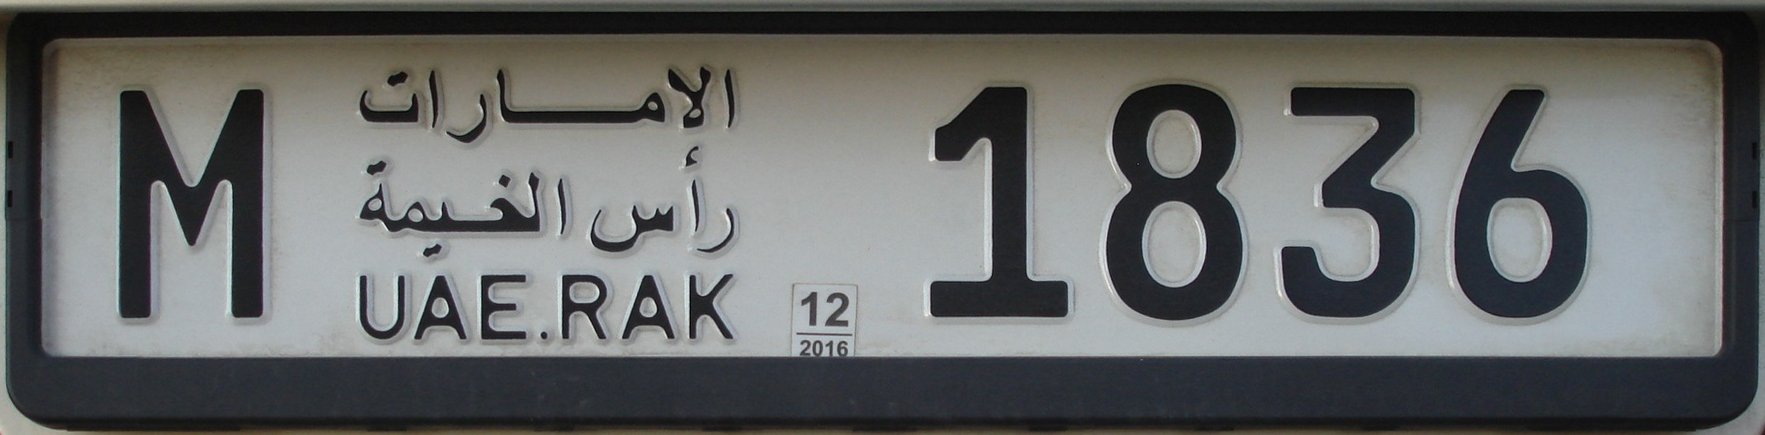 RAK-2015-priv-M1836